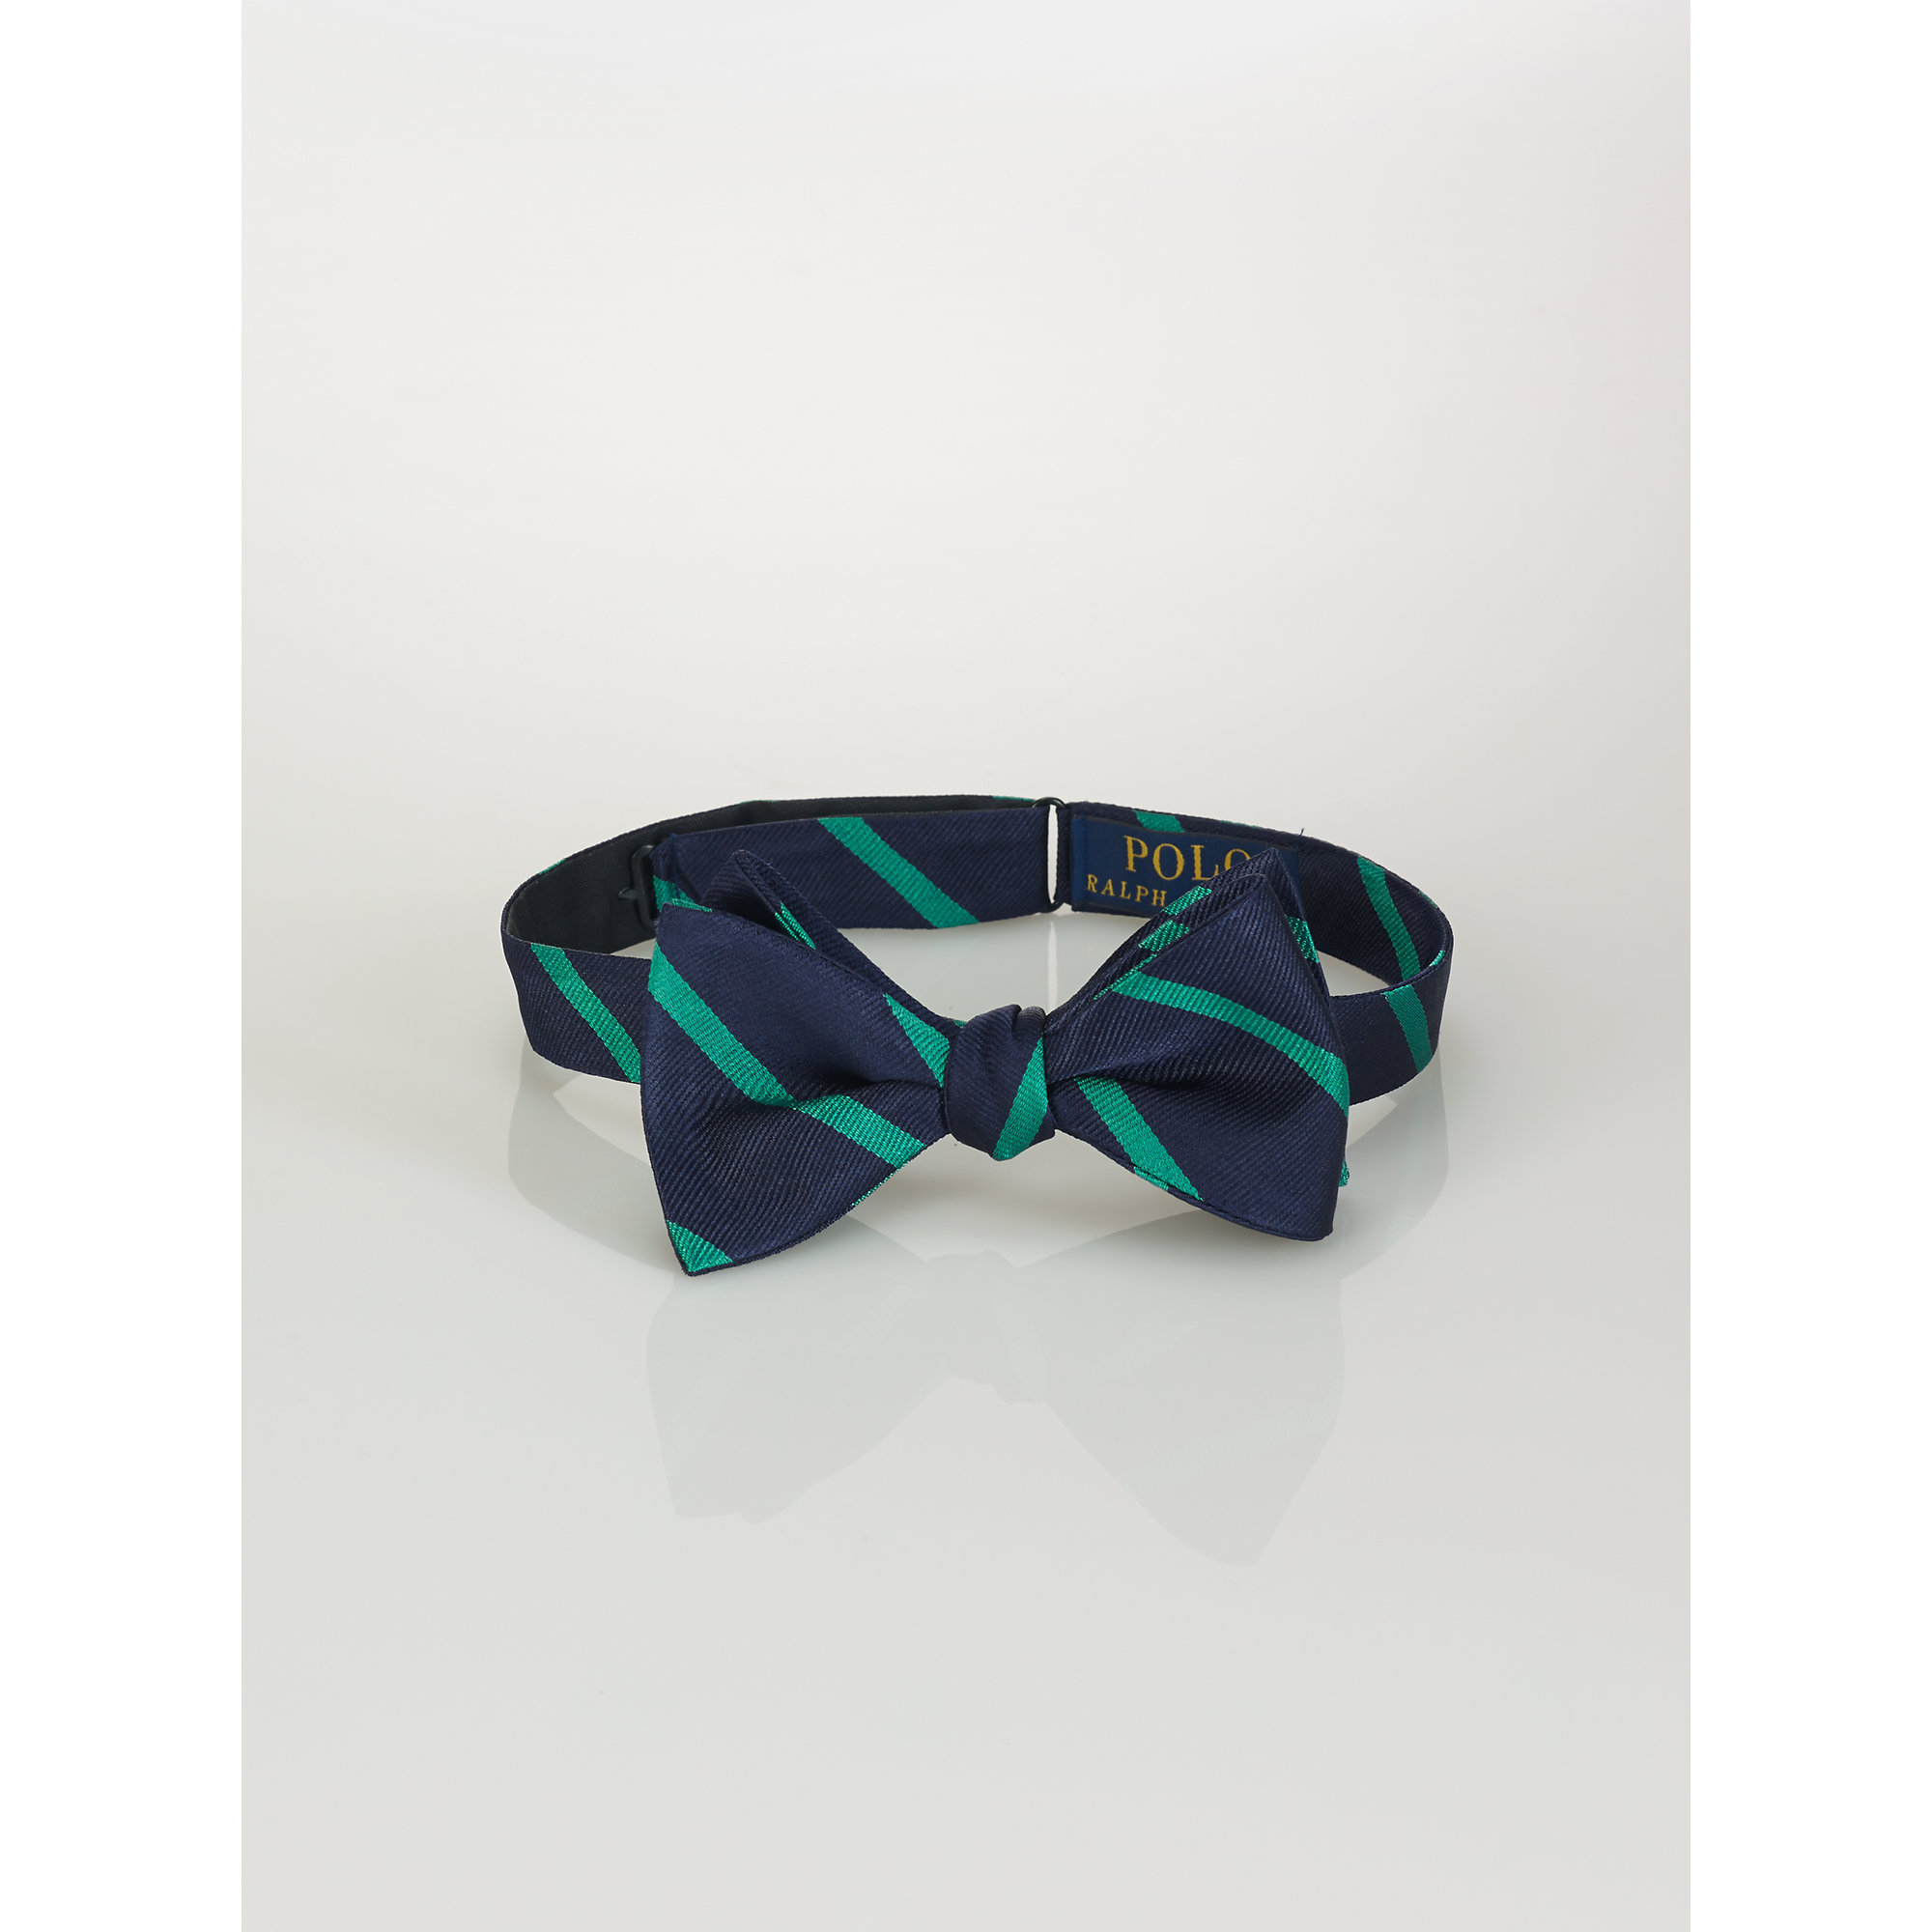 ralph lauren bow ties